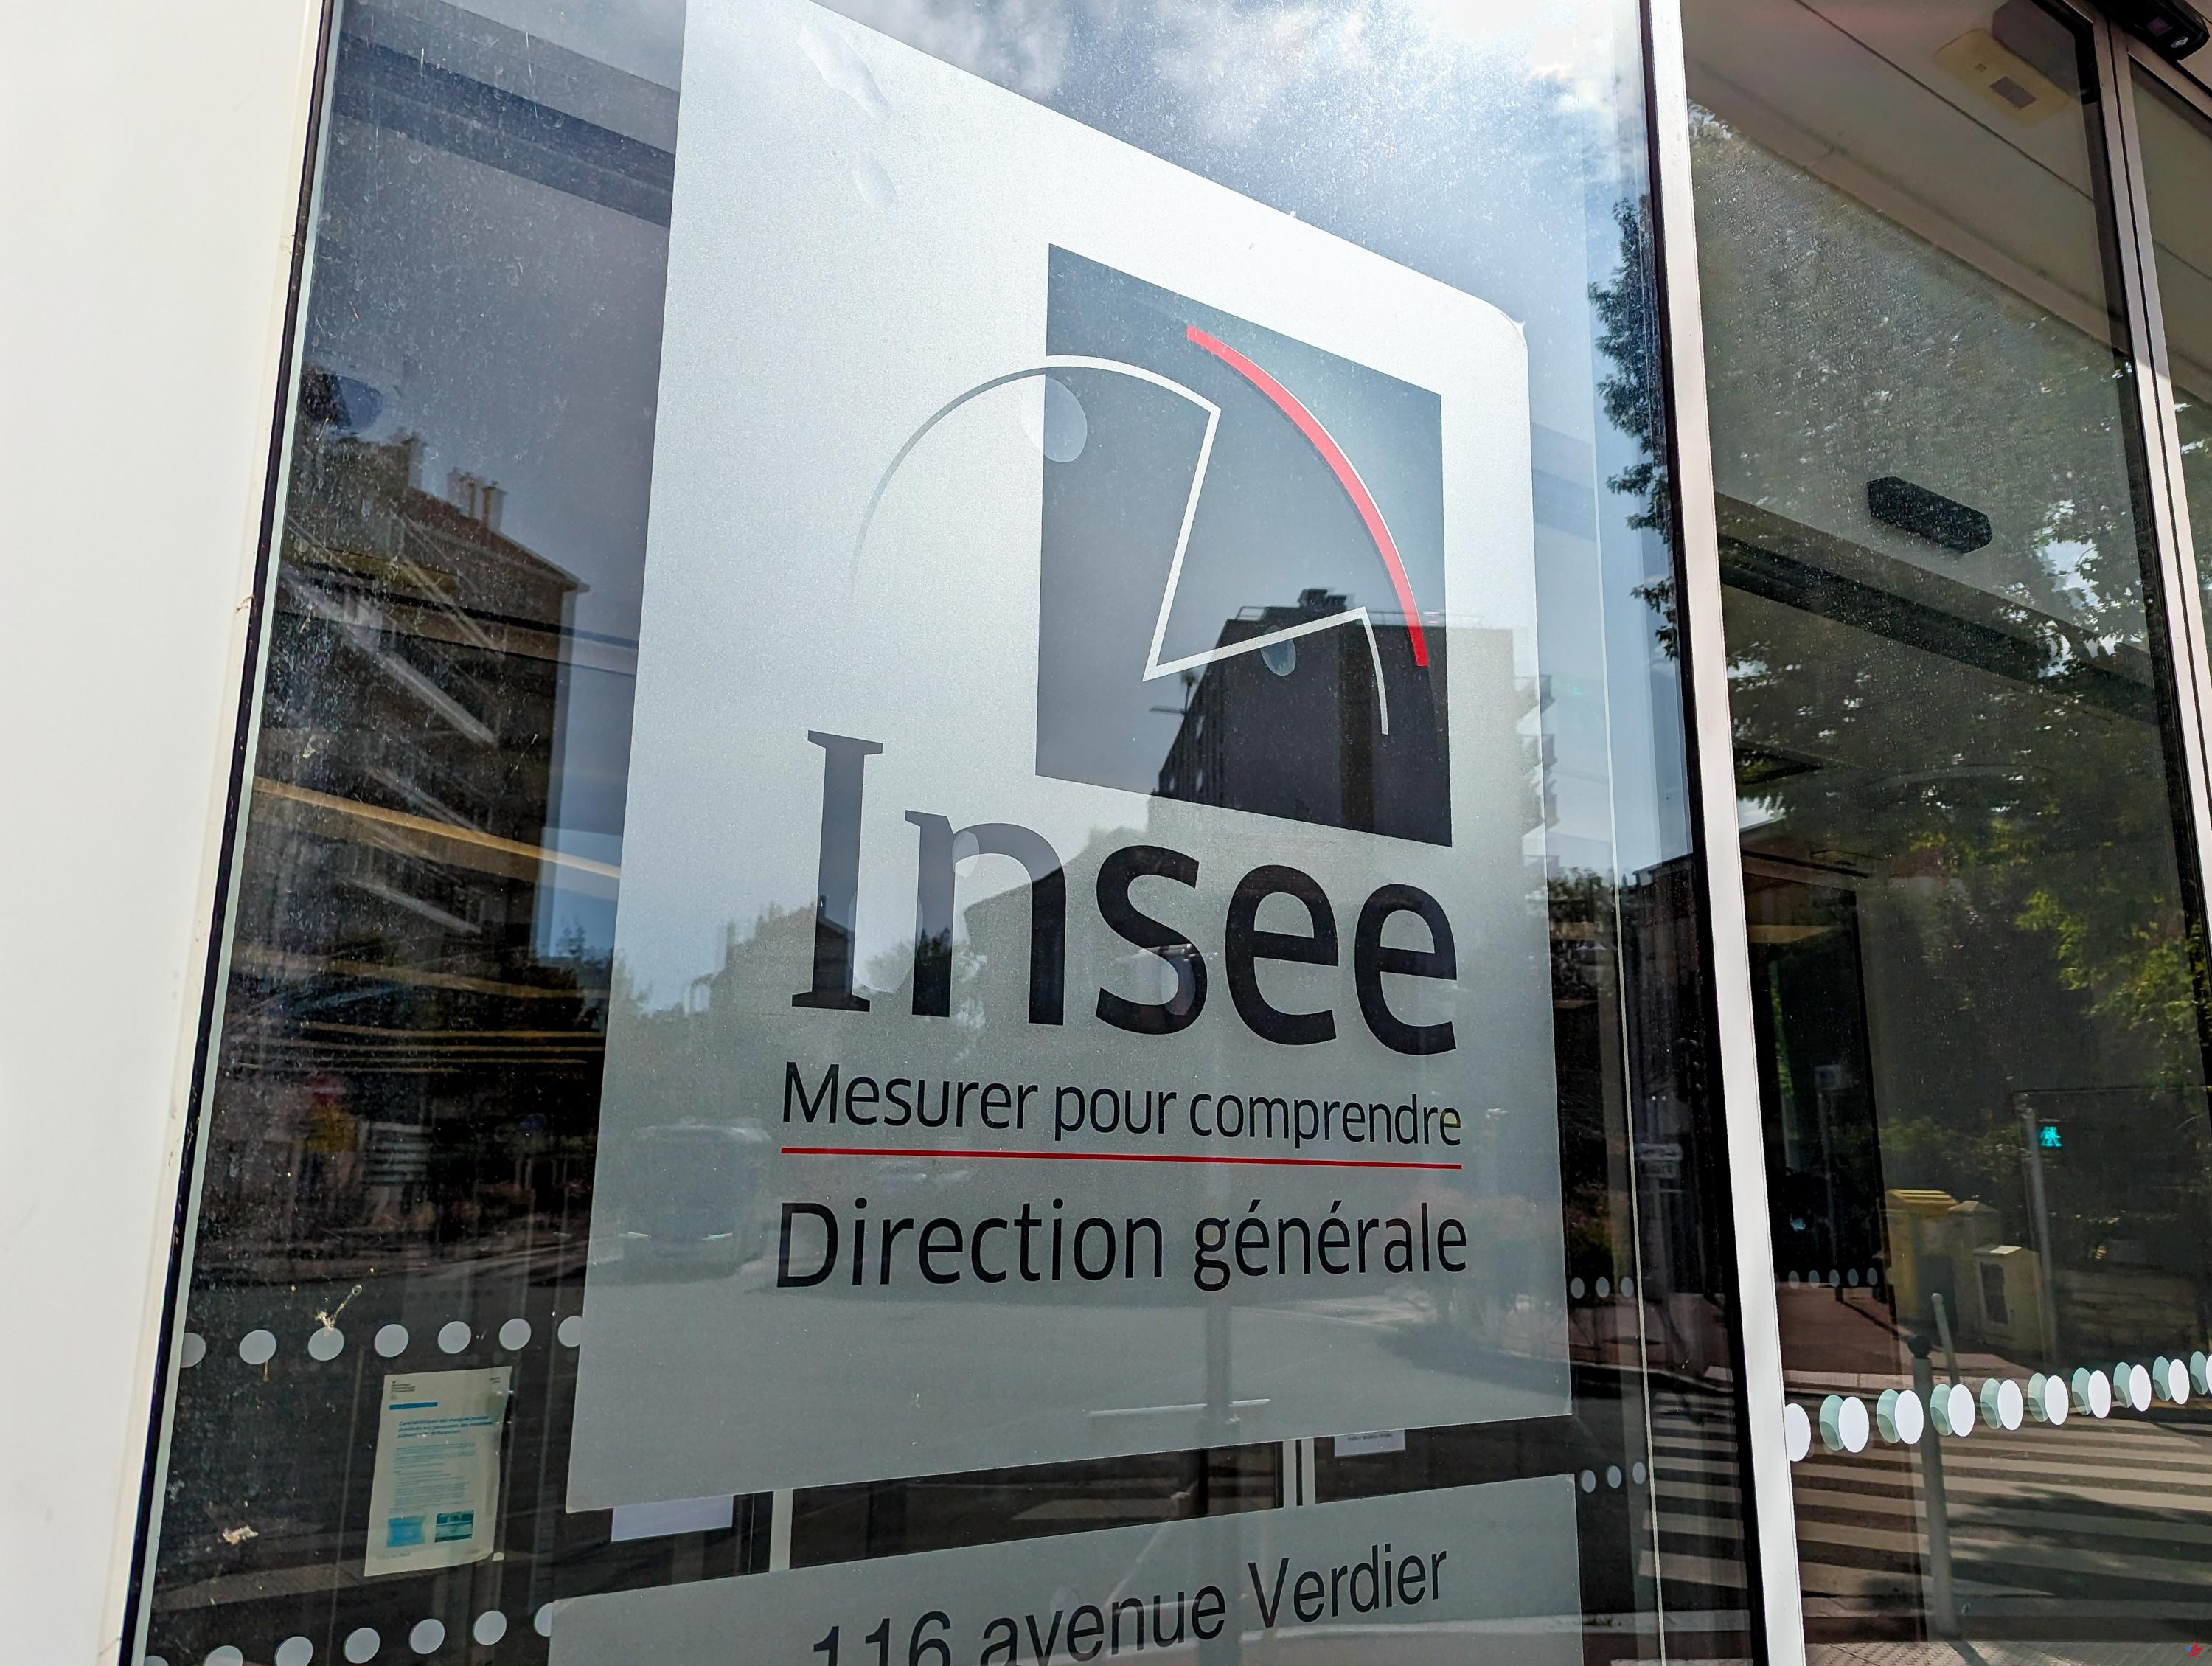 Agentes del INSEE convocados este martes a huelga por sus condiciones laborales